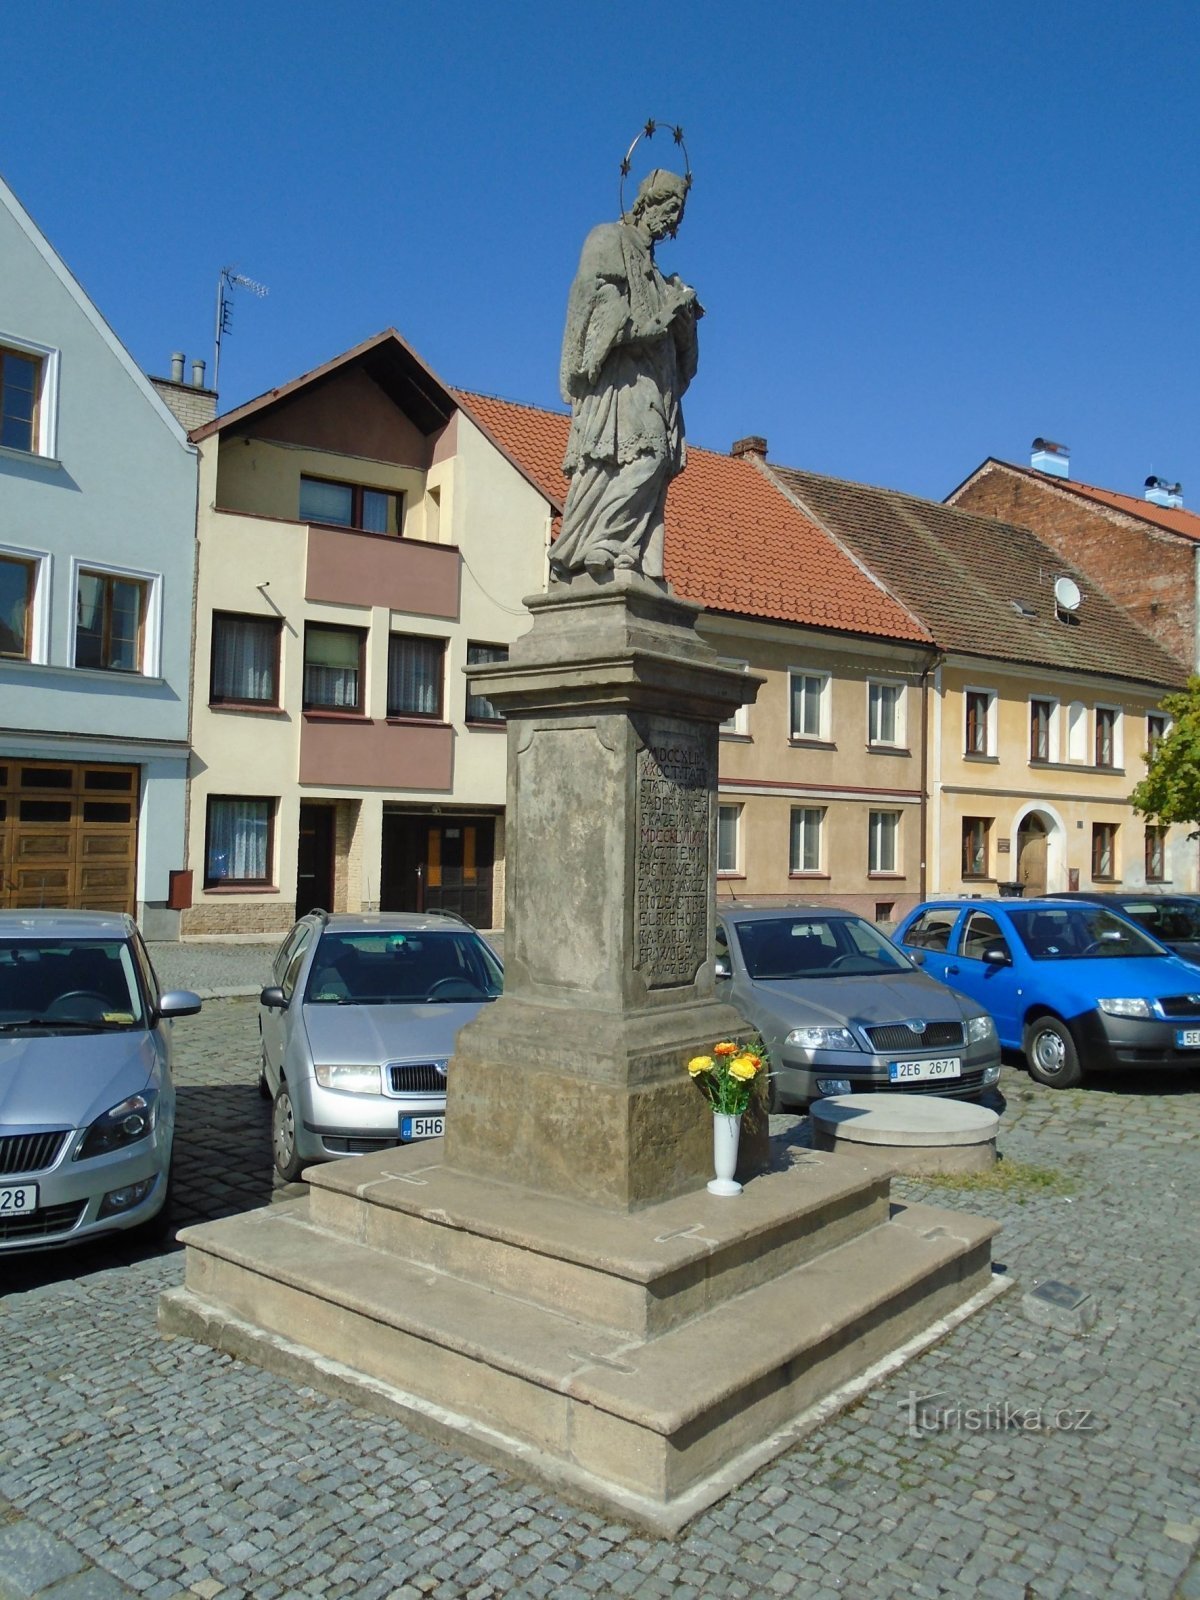 聖の像Bělobranské náměstí の Nepomuck のヨハネ (パルドゥビツェ、18.4.2018 年 XNUMX 月 XNUMX 日)